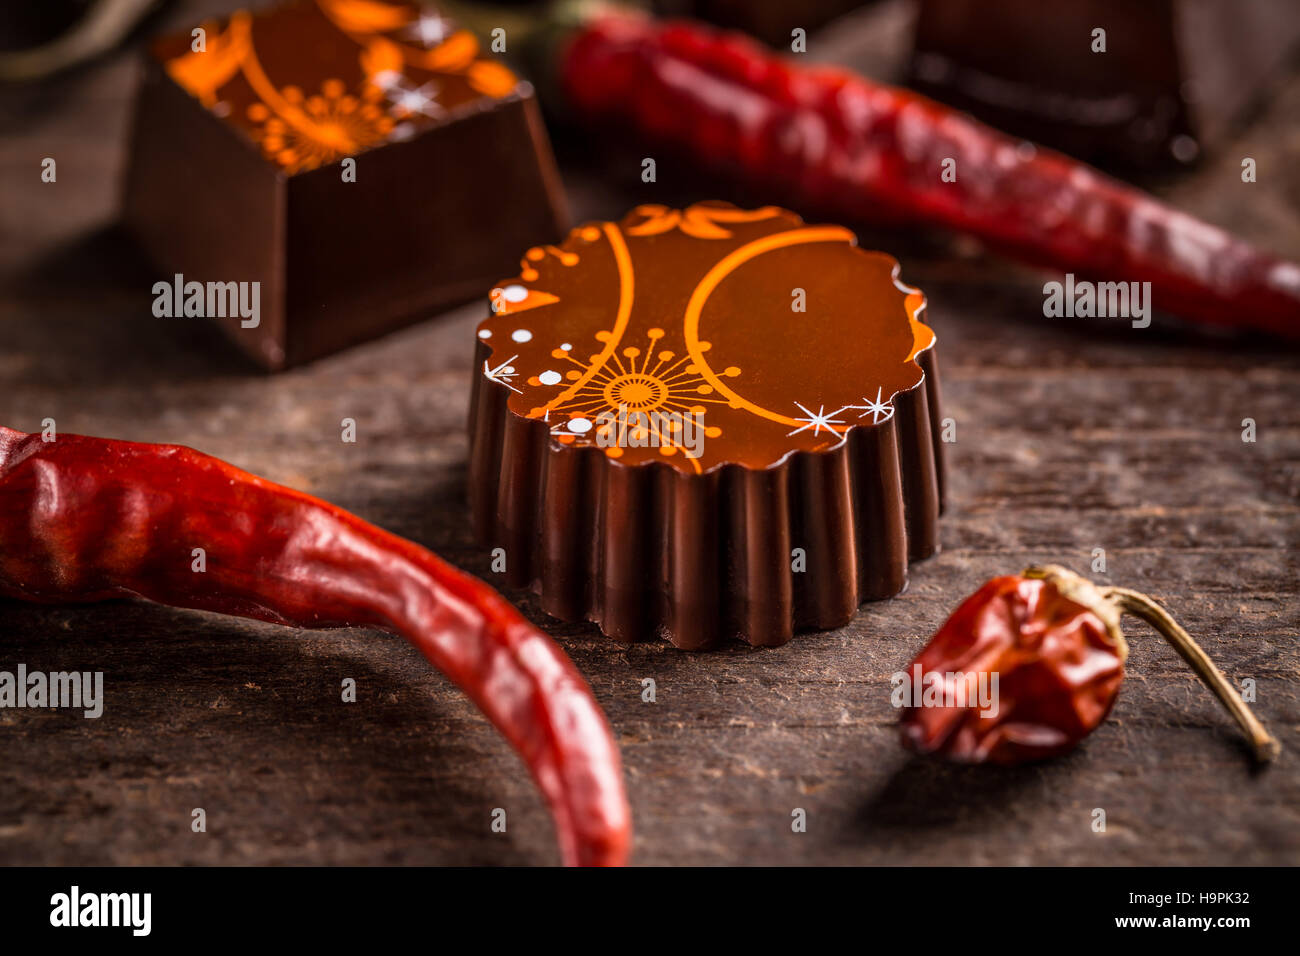 Truffle chocolate candies Stock Photo